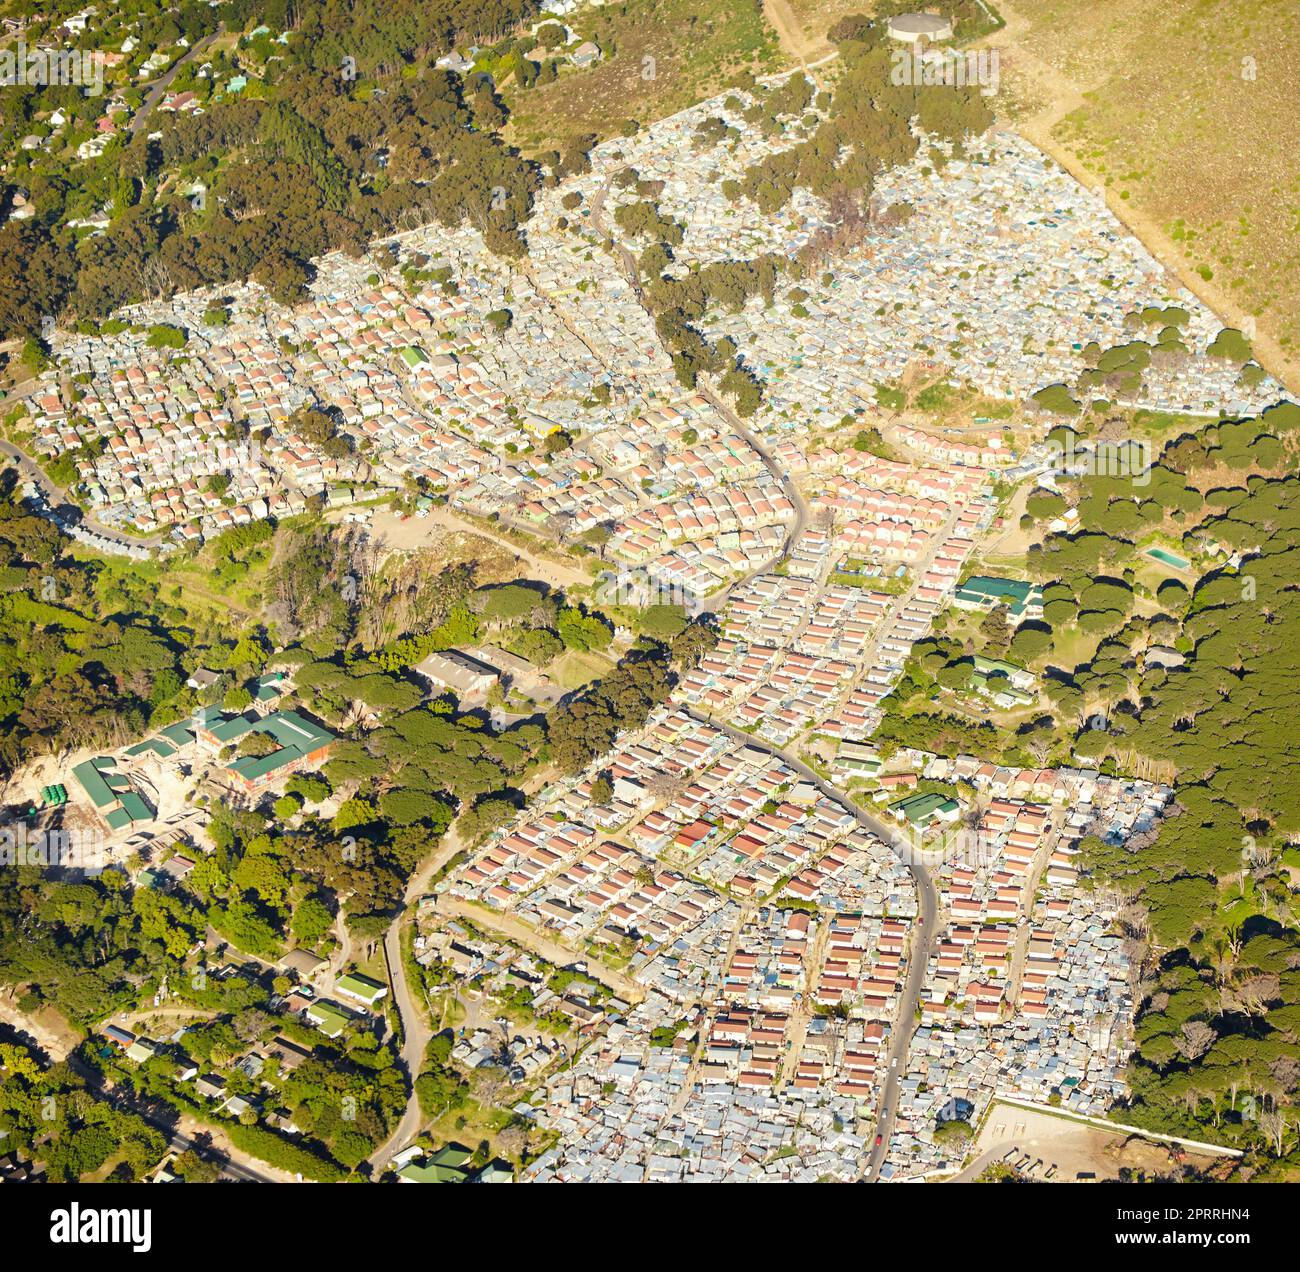 Sviluppo rurale. Veduta aerea di un piccolo sviluppo di un urband in campagna. Foto Stock